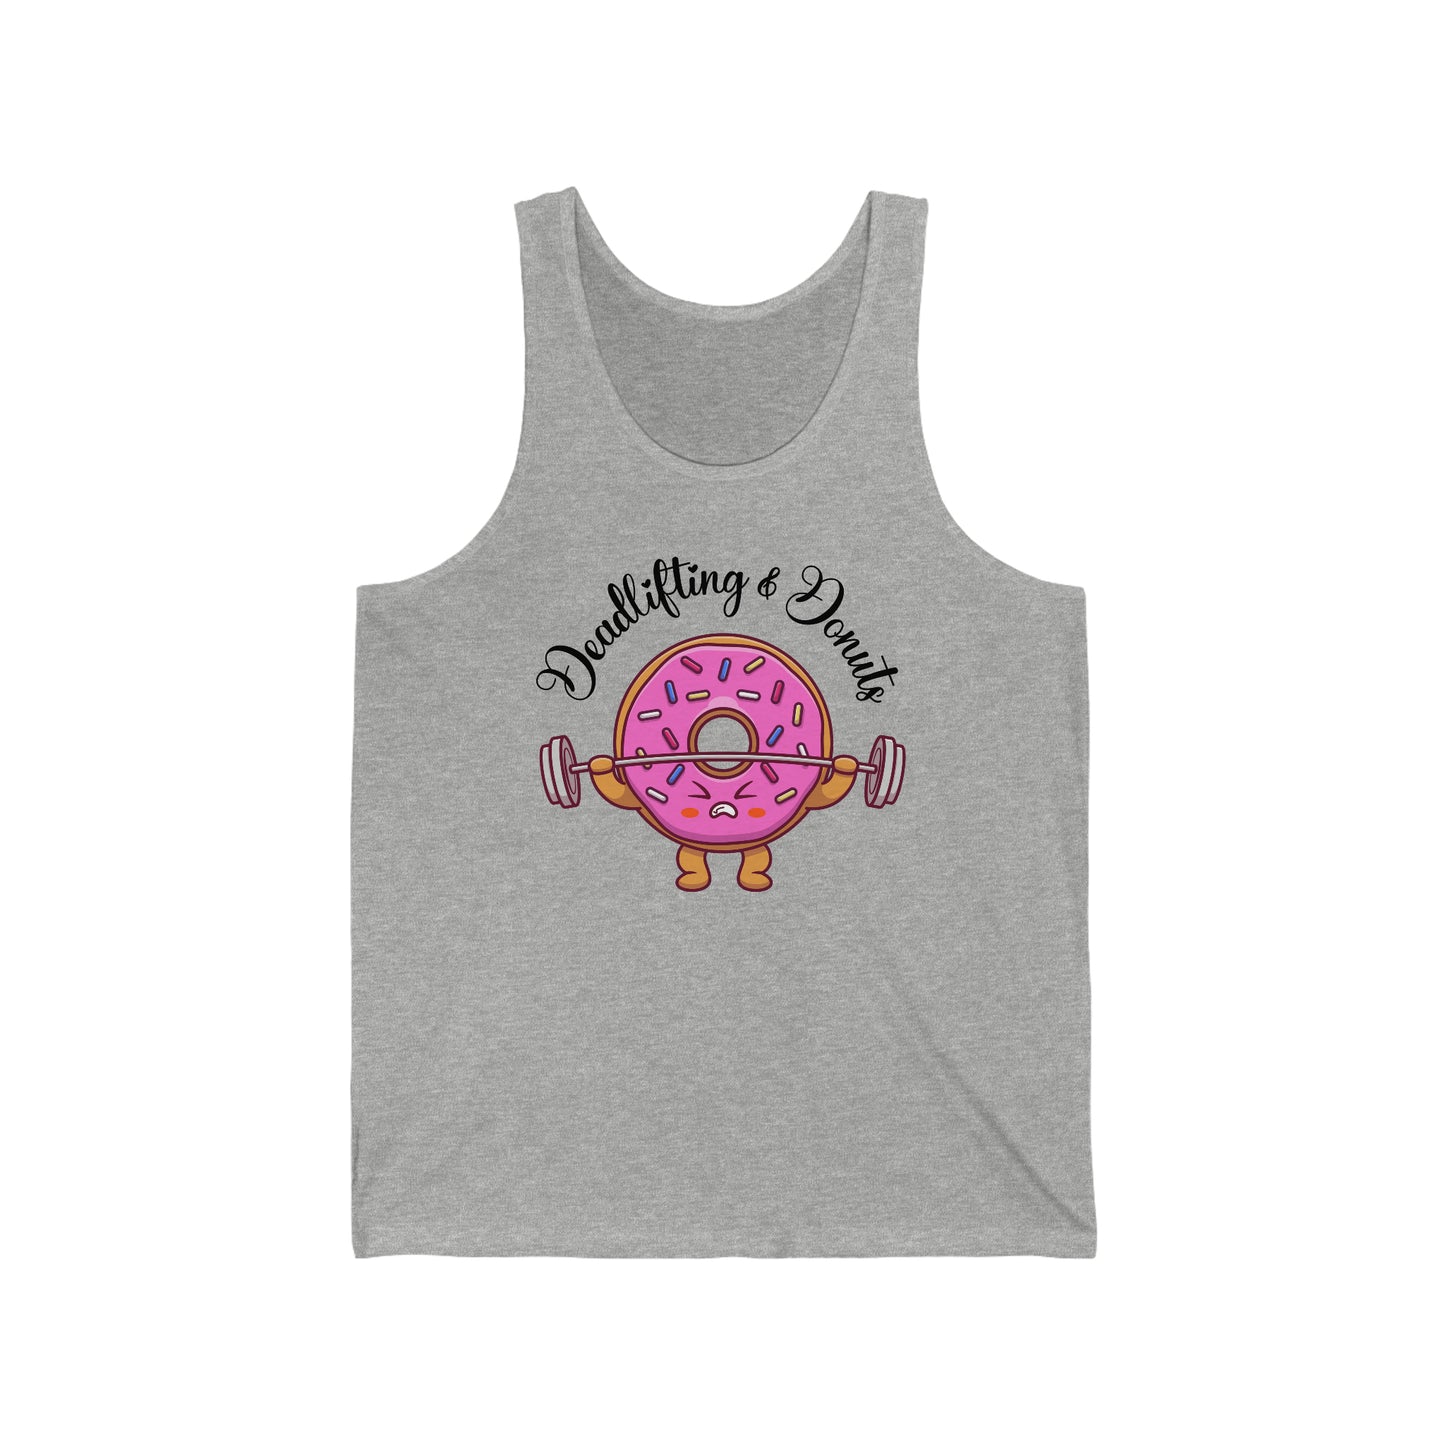 Donuts & Deadlifts Workout Shirt